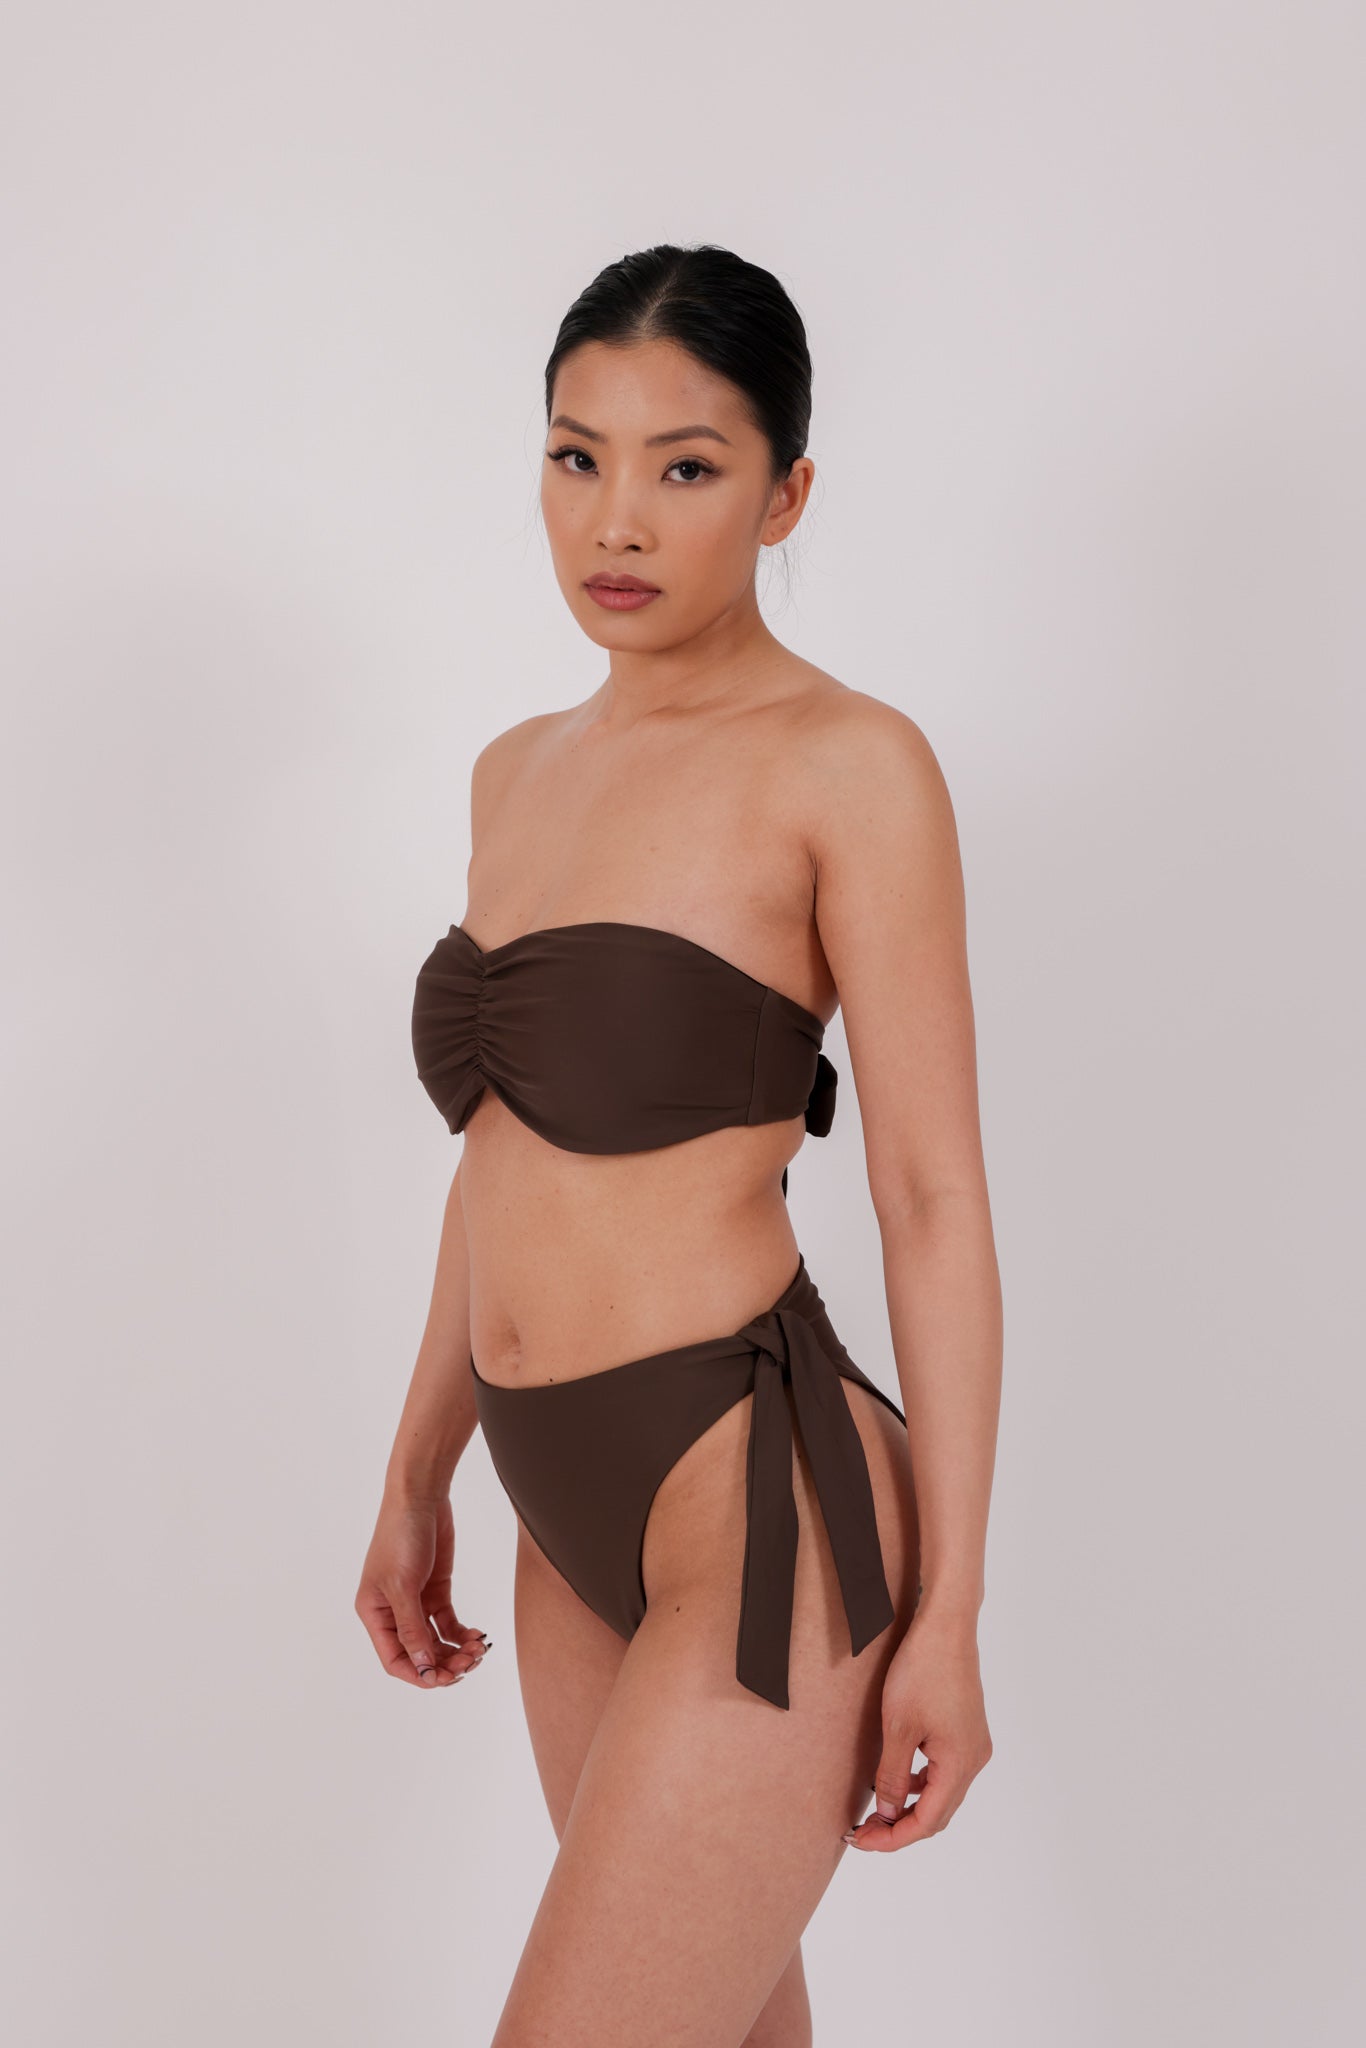 brown strapless bikini in model